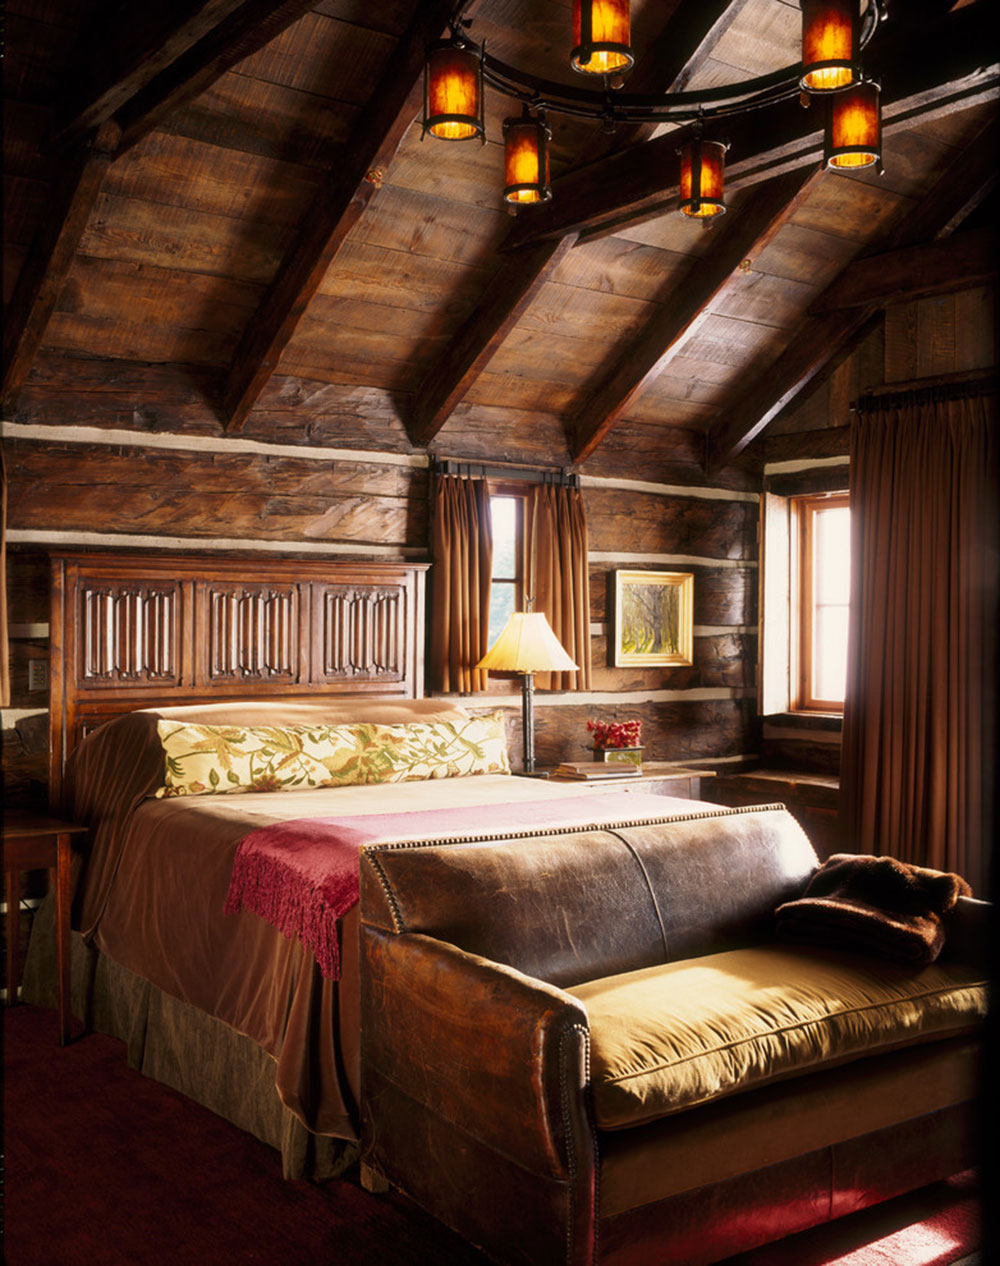 Rustic-Bedroom-Design-Ideas-That-Exude-Comfort-10 Rustic-Bedroom-Design-Ideas That Exude Comfort